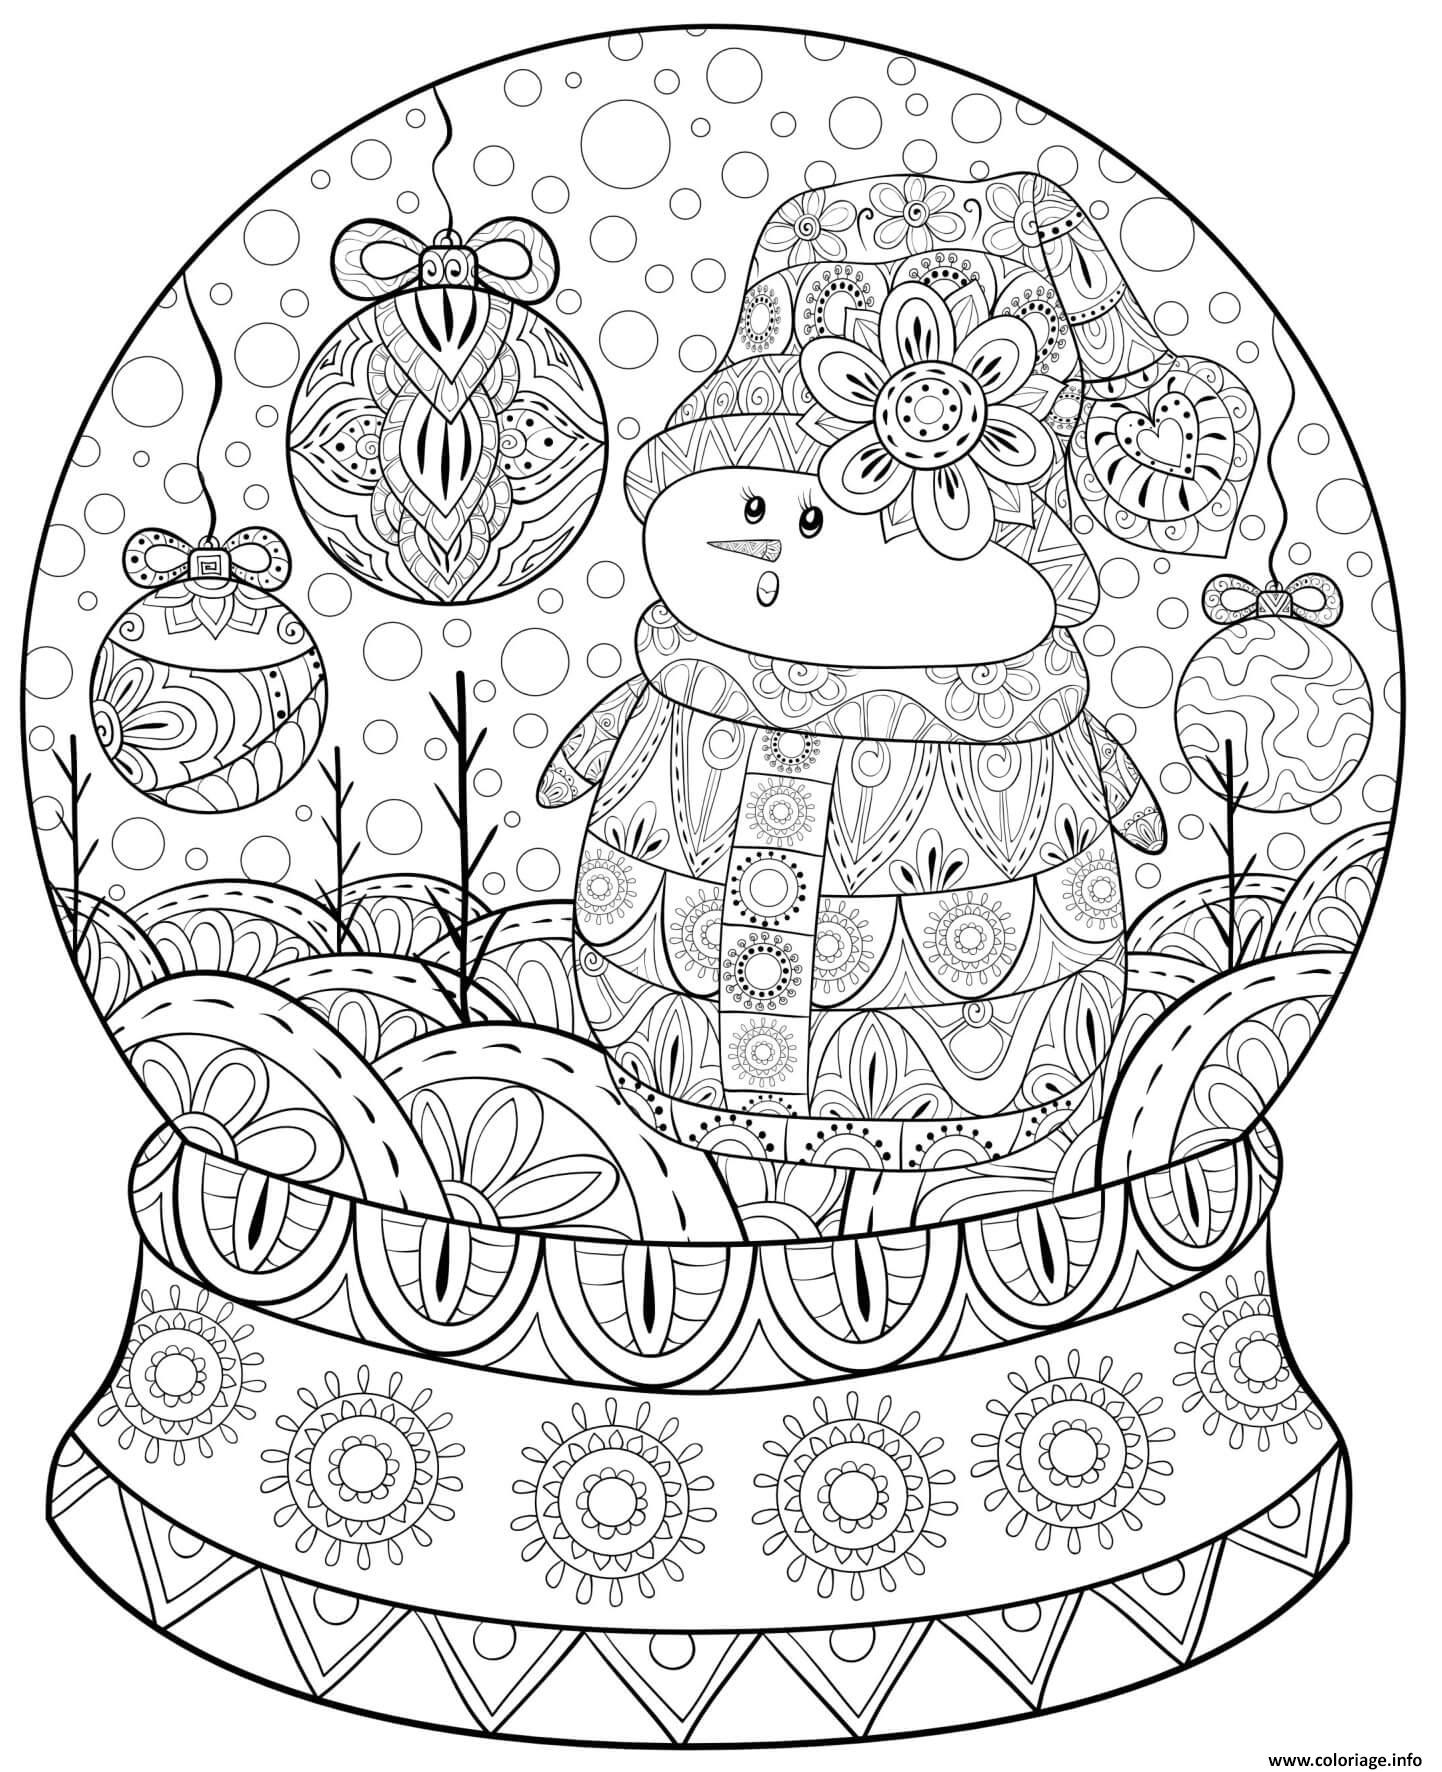 Coloriage noel pour adulte motif globe et bonhomme de neige - JeColorie.com